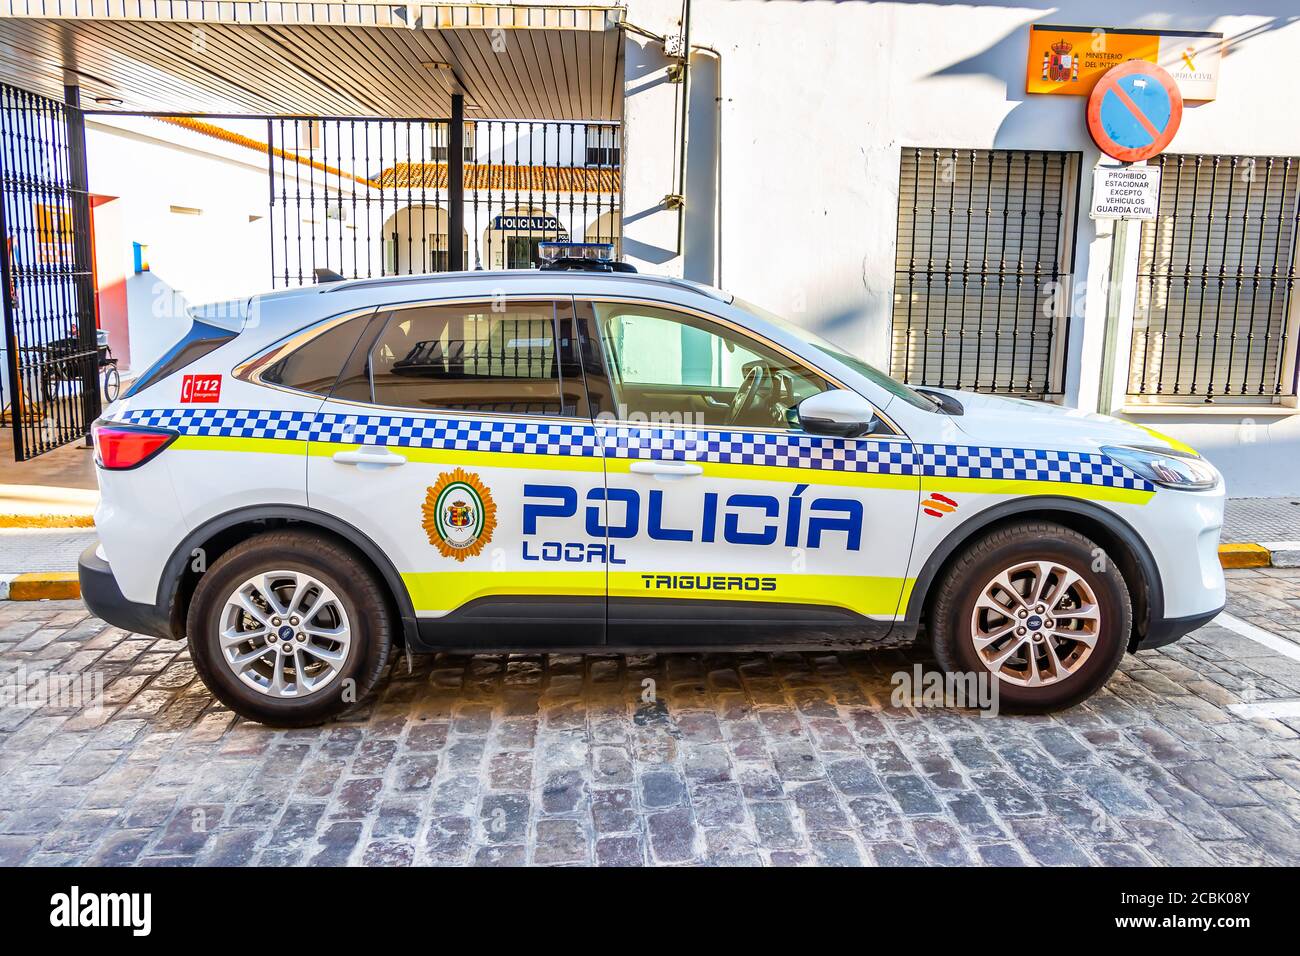 Trigueros, Huelva, Espagne - 13 août 2020: Voiture de police municipale, marque Ford Kuga, garée devant le bureau de police Banque D'Images